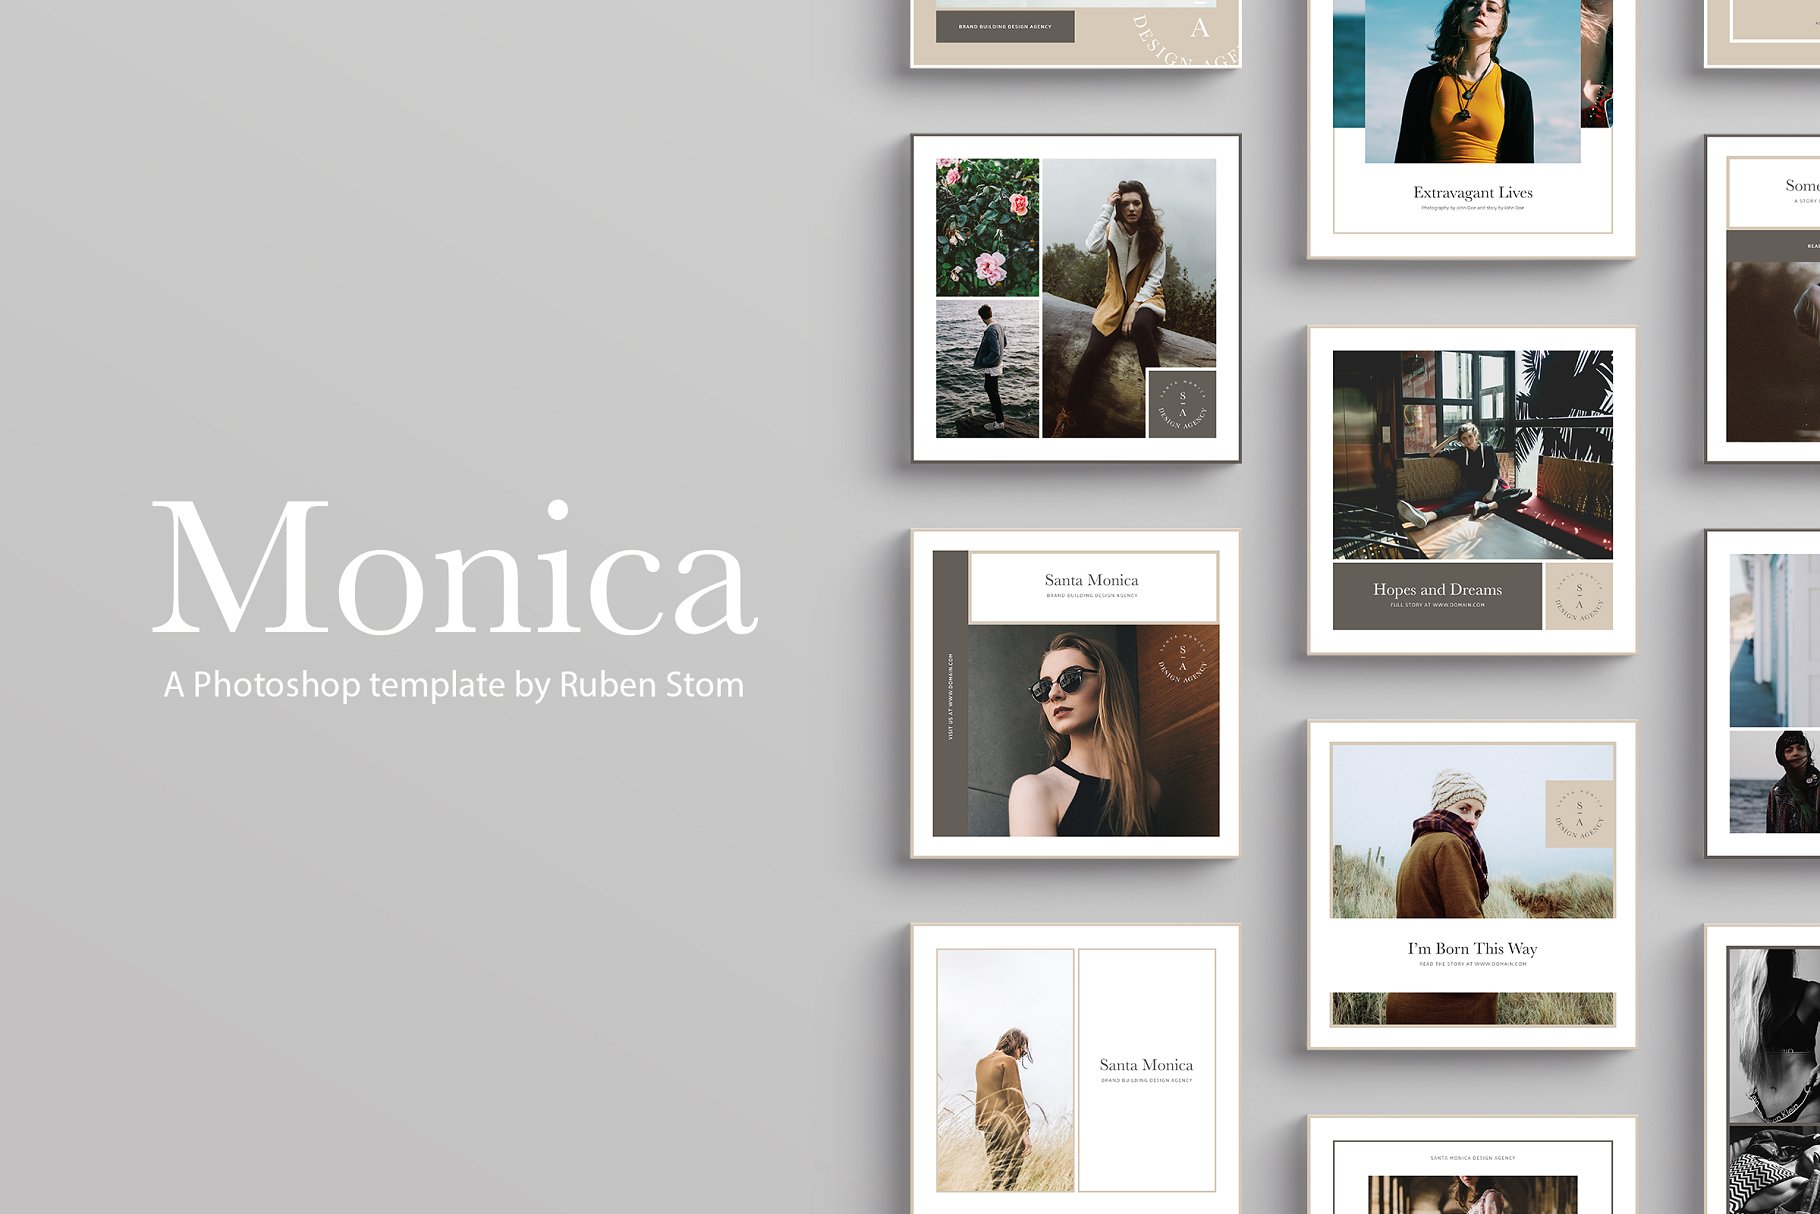 时尚主题社交媒体贴图模板第一素材精选 Santa Monica Social Media Templates插图